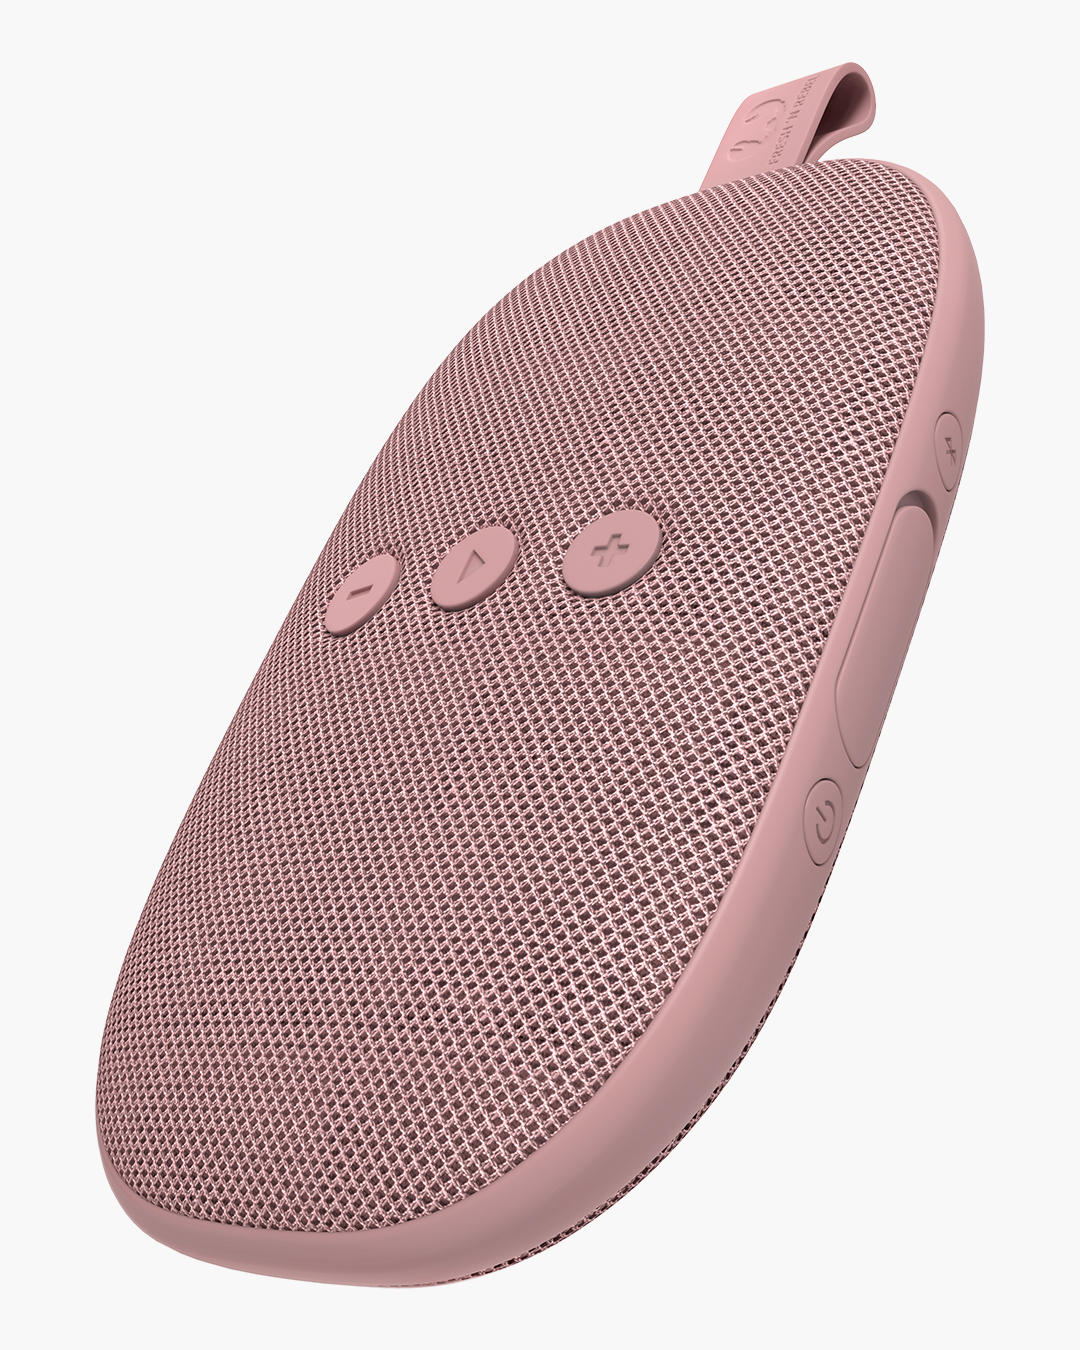 Fresh 'n Rebel - Rockbox Bold X - Wireless Bluetooth speaker - Dusty Pink